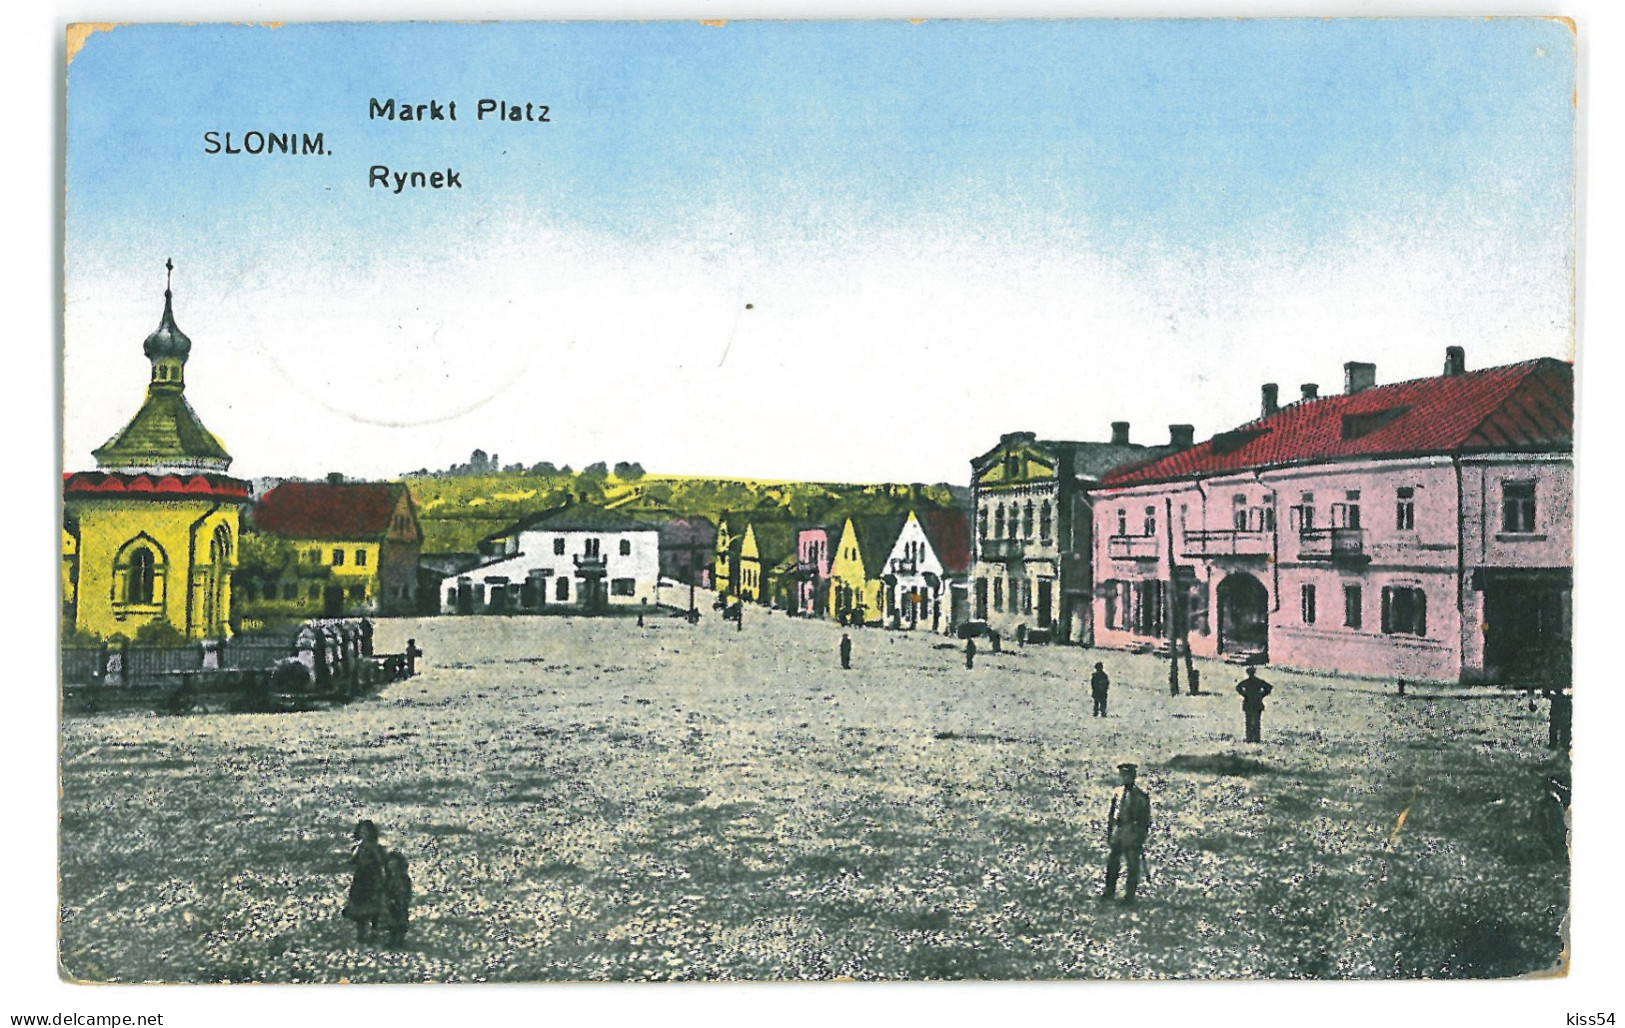 BL 26 - 24571 SLONIM, Market, Belarus - Old Postcard, CENSOR - Used - 1917 - Belarus